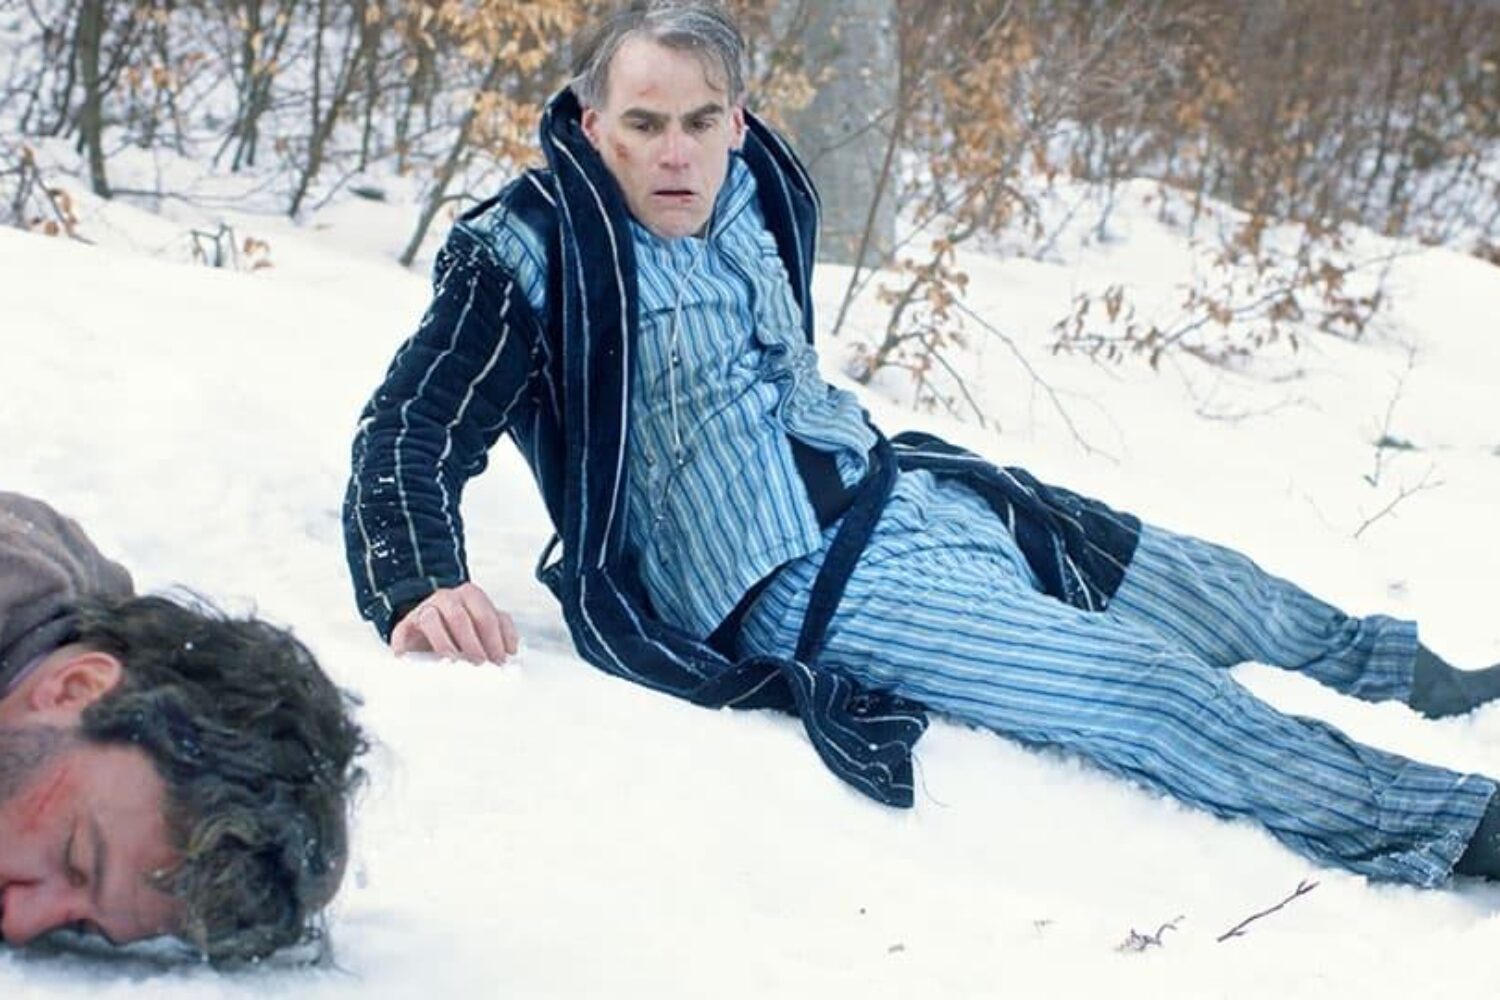 Der Protagonist sitzt nach einem Sturz mit überraschtem Gesichtsausdruck im Schnee, nur in einem Pyjama gekleidet. Neben ihm liegt ein scheinbar bewusstloser Mann.